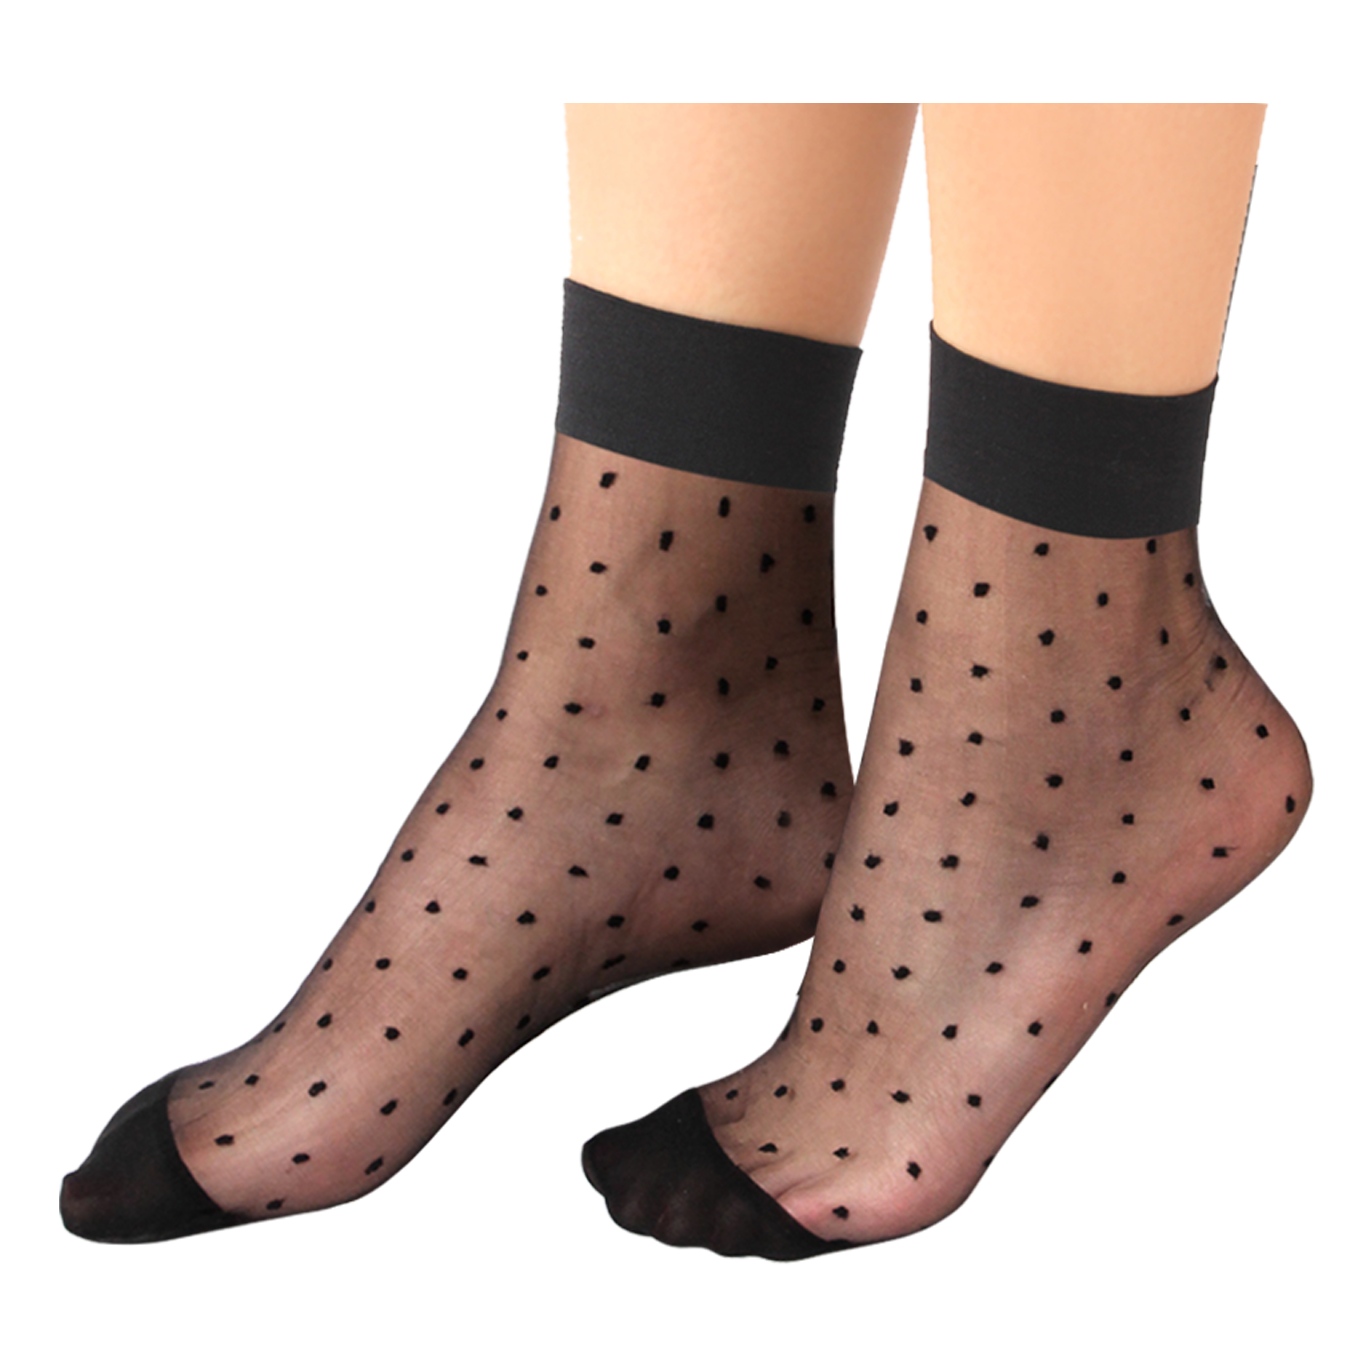 Women's Ankle-High Dots Jacquard-Knit Hosiery Socks